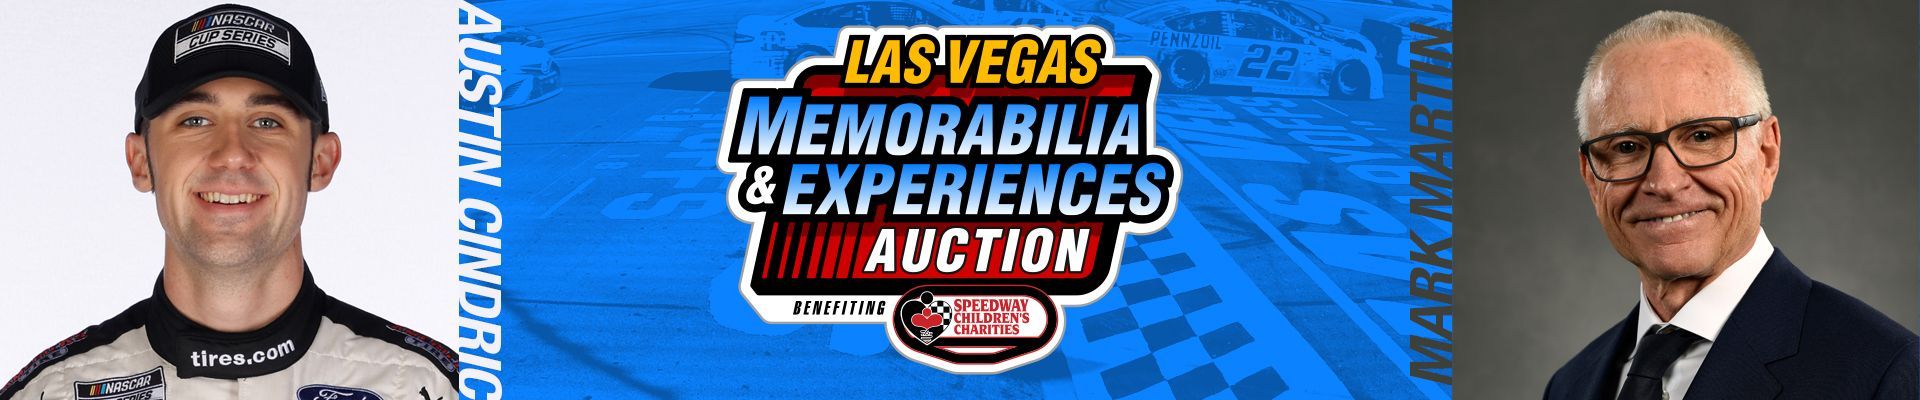 SCC Las Vegas Live Auction Header